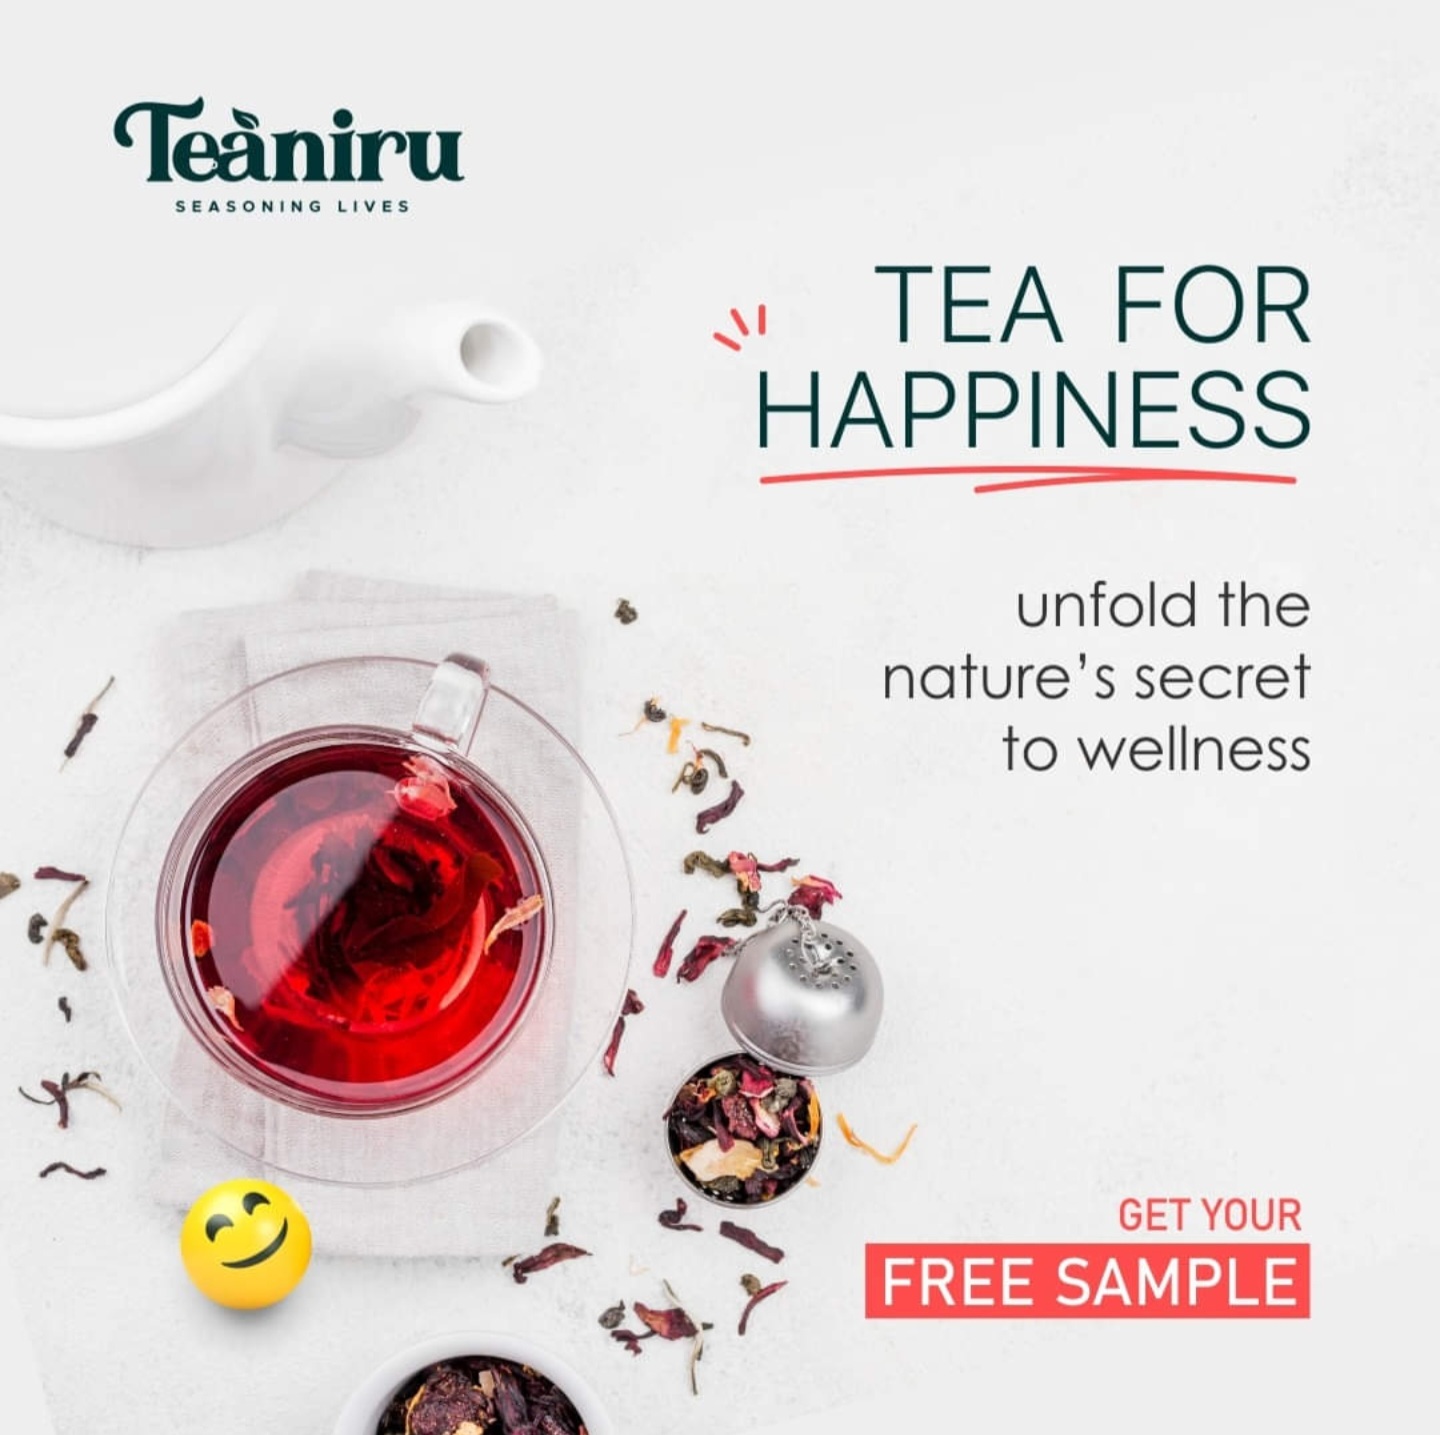 Free Sample of Teaniru Tea